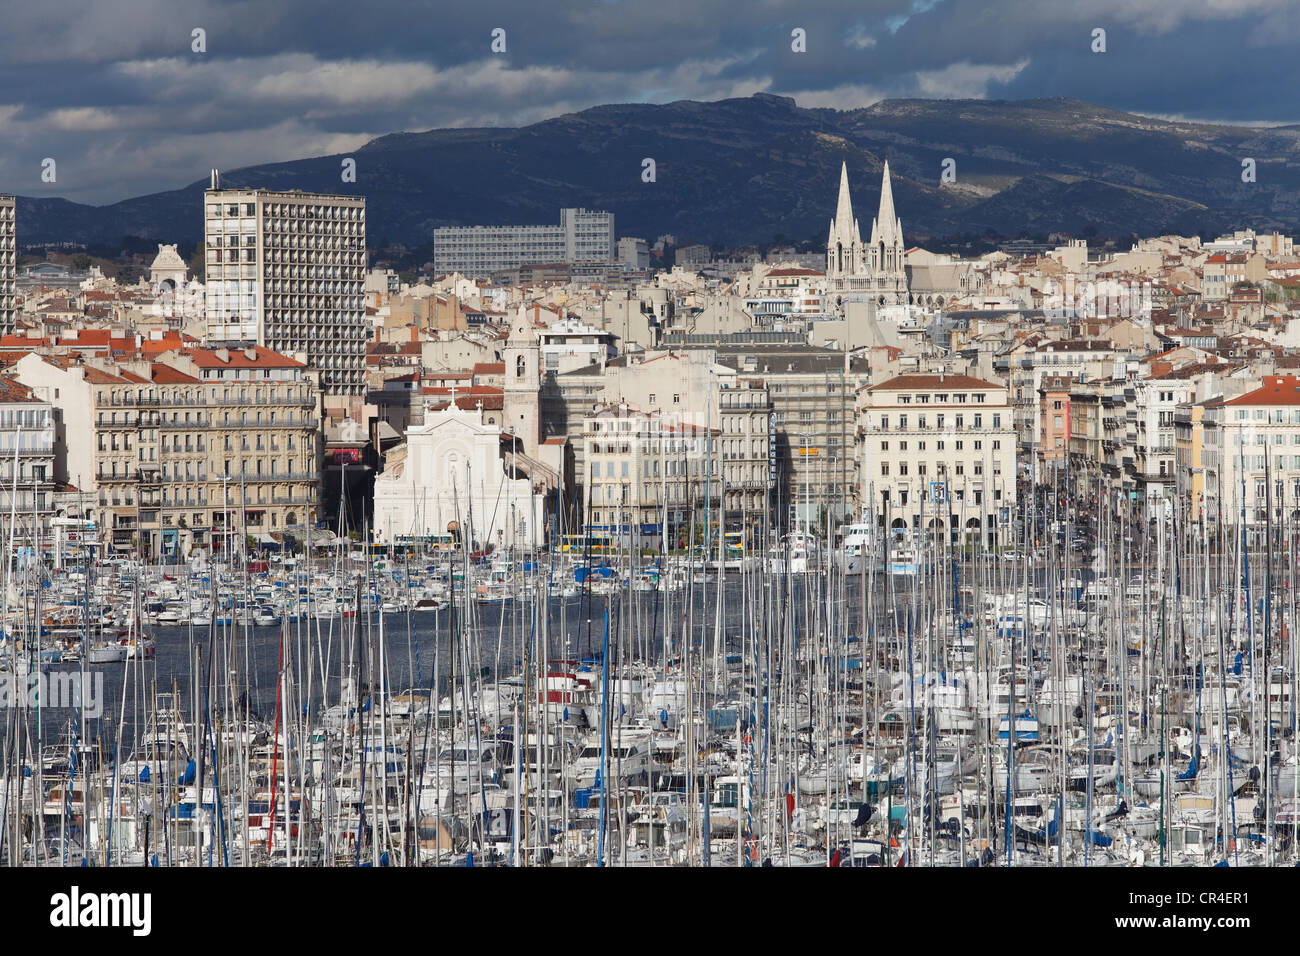 Vieux Port, vieux port de Marseille, Bouches-du-Rhône, Provence, France, Europe Banque D'Images